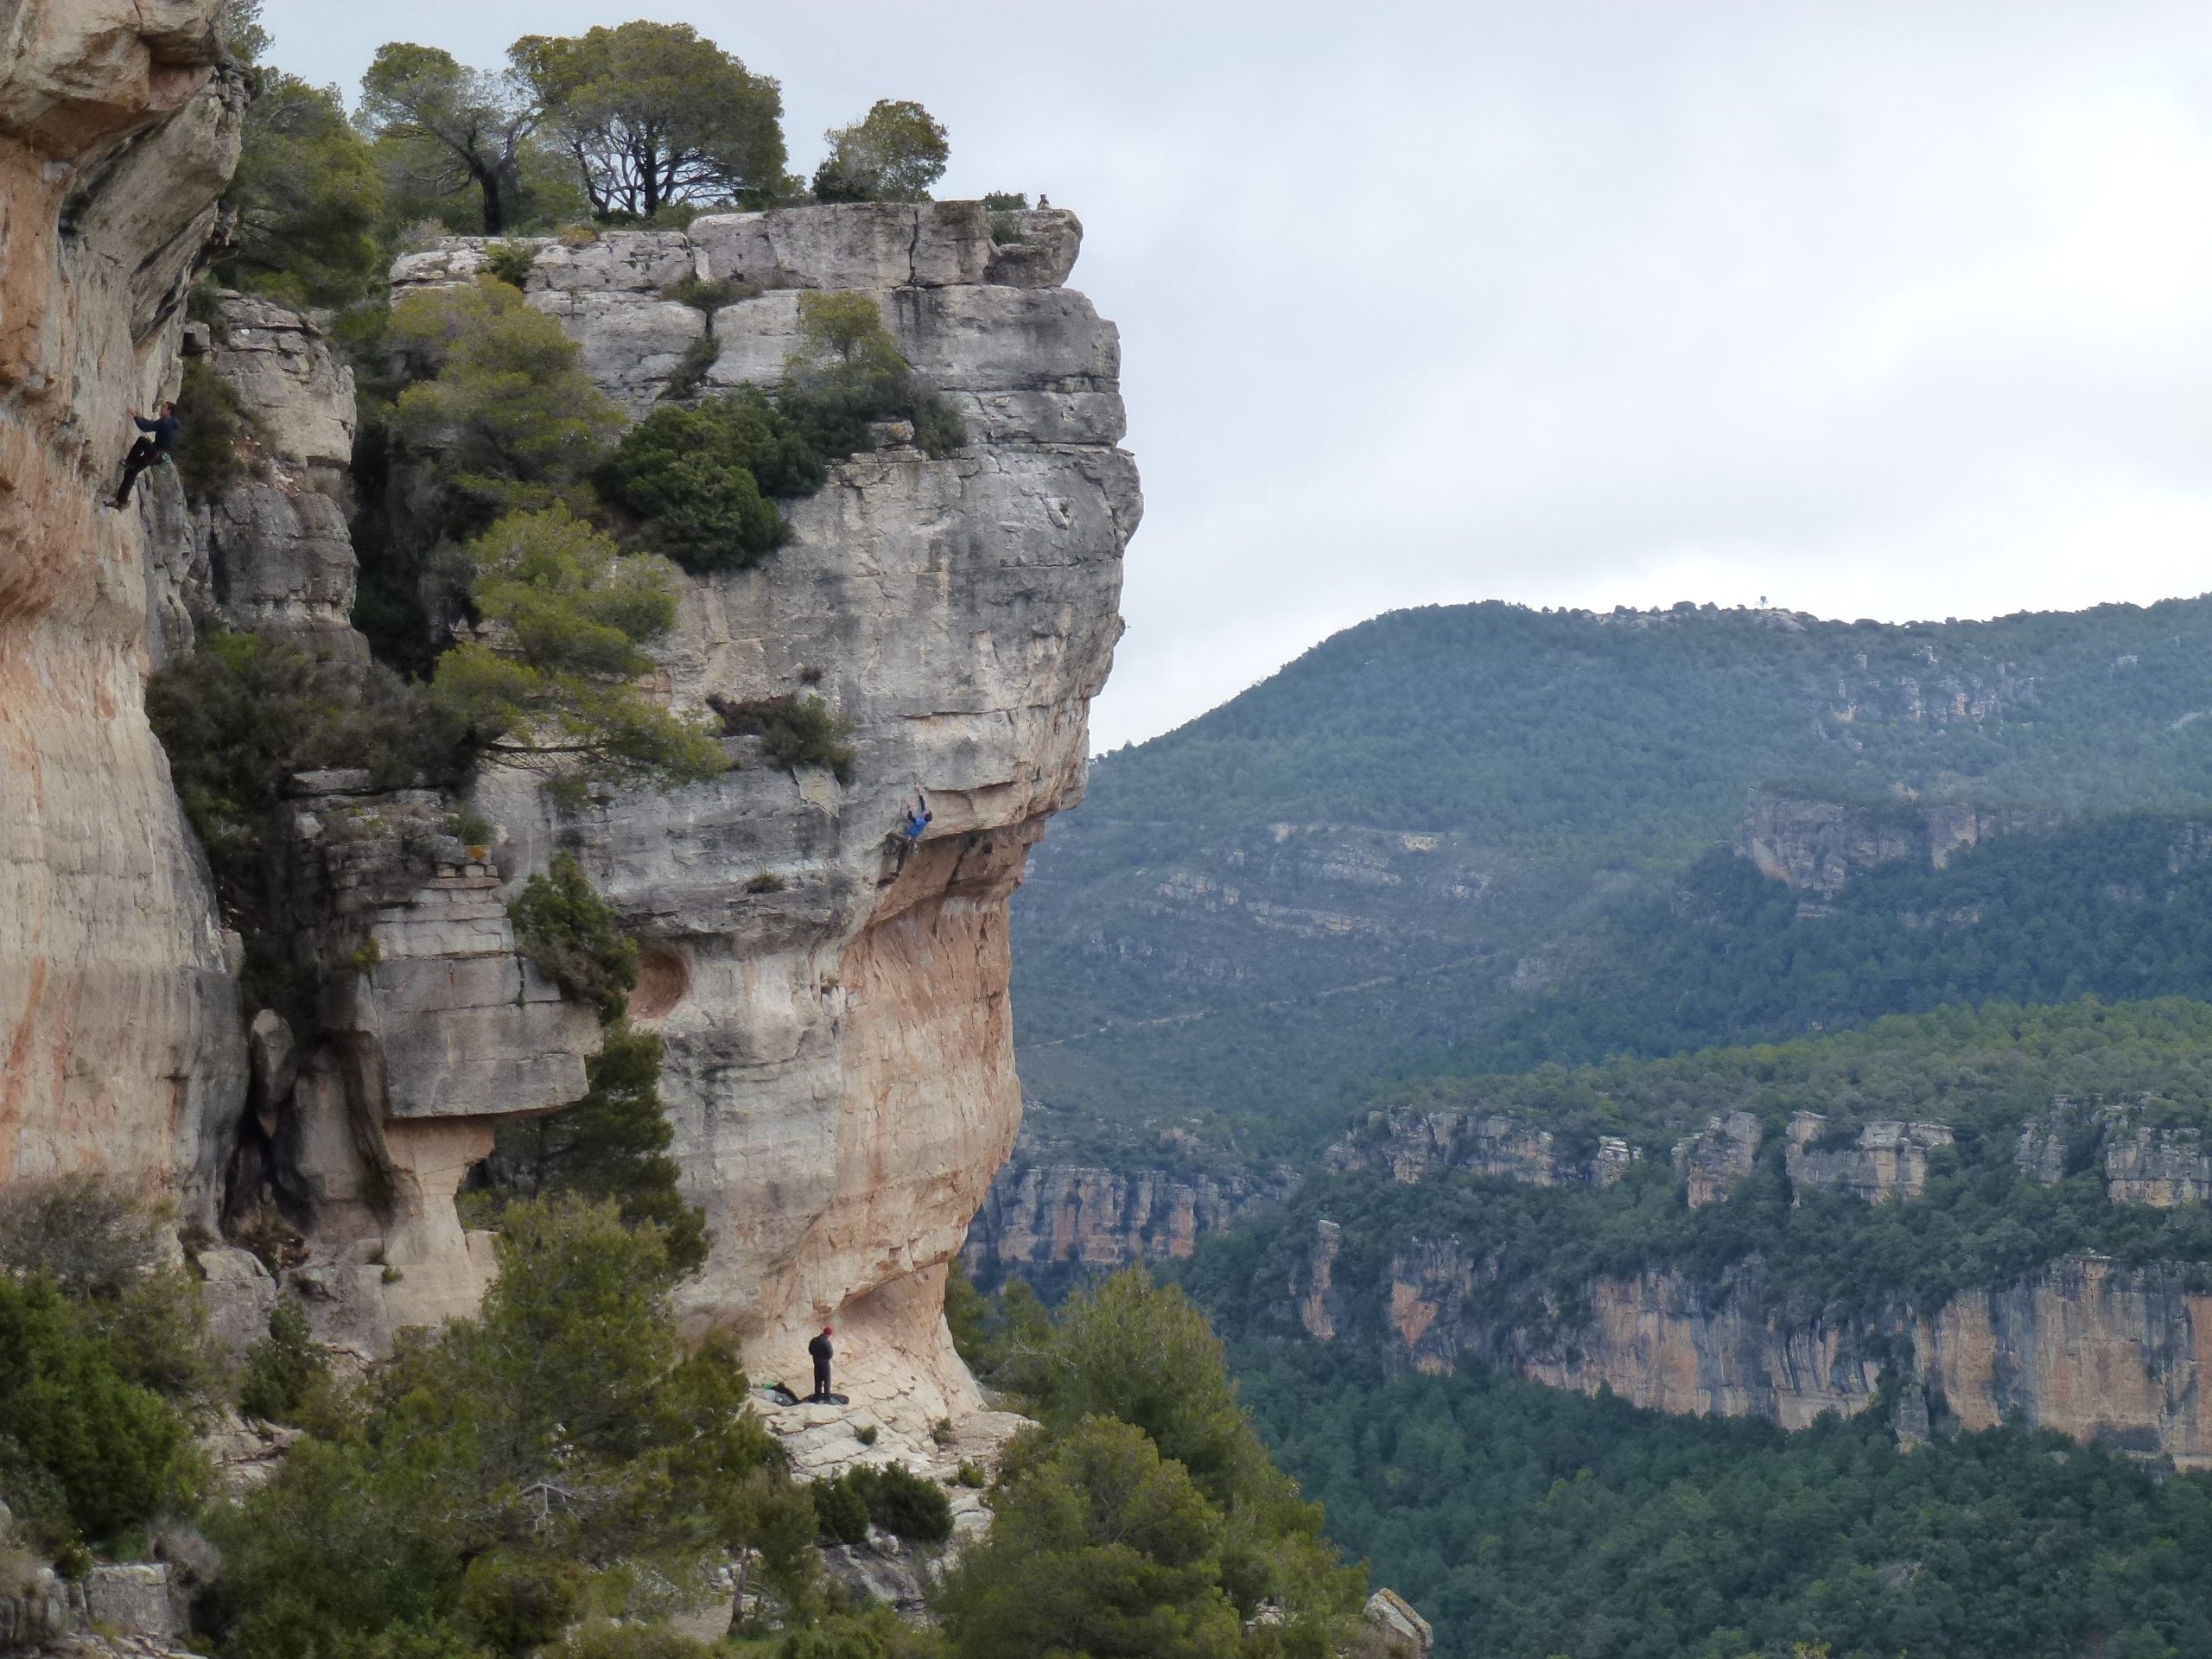 Curso de escalada en roca, nivel 2 (vías de varios largos equipadas). Cataluña